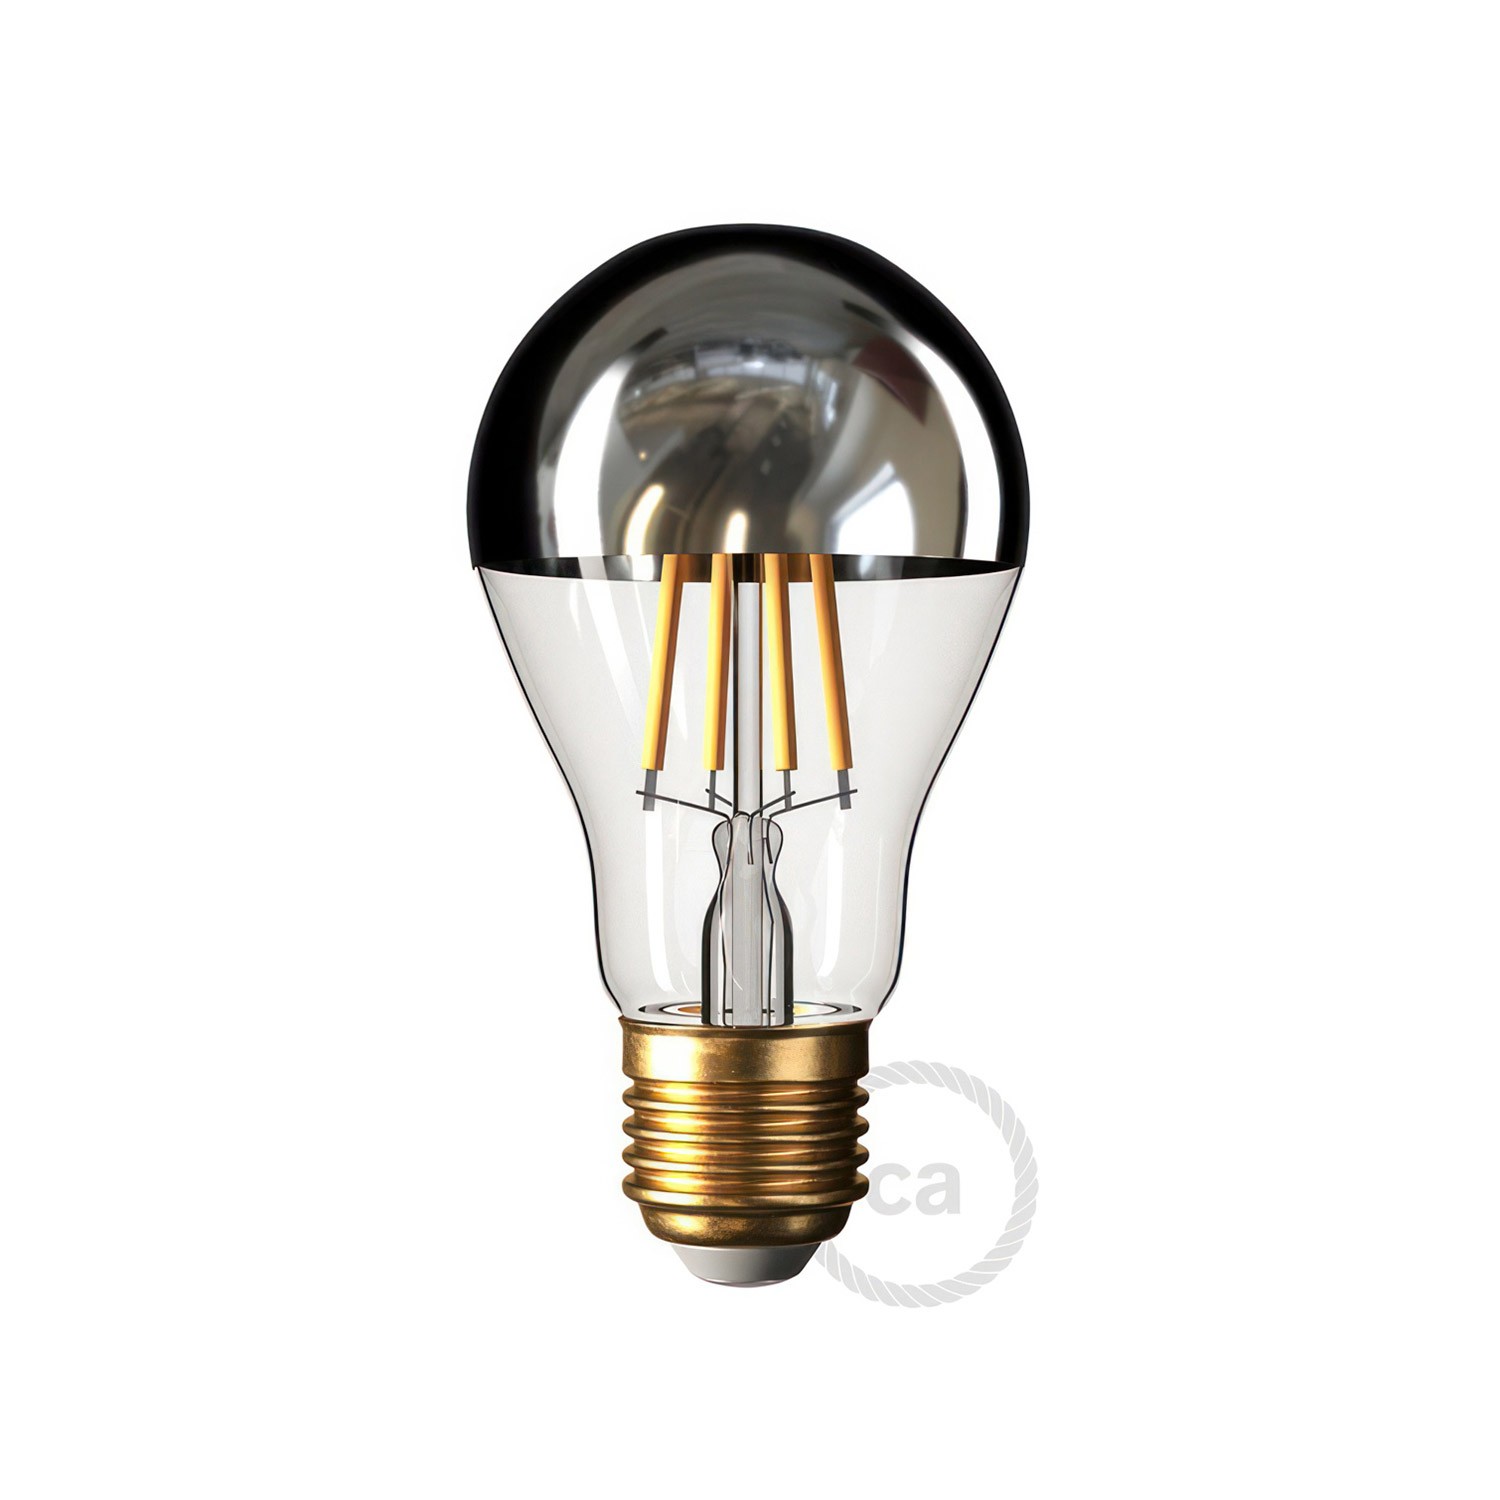 Fermaluce Pastel kovinsko svetilo z valjasto obliko senčila, Ø 15cm h18cm, za stensko ali stropno montažo